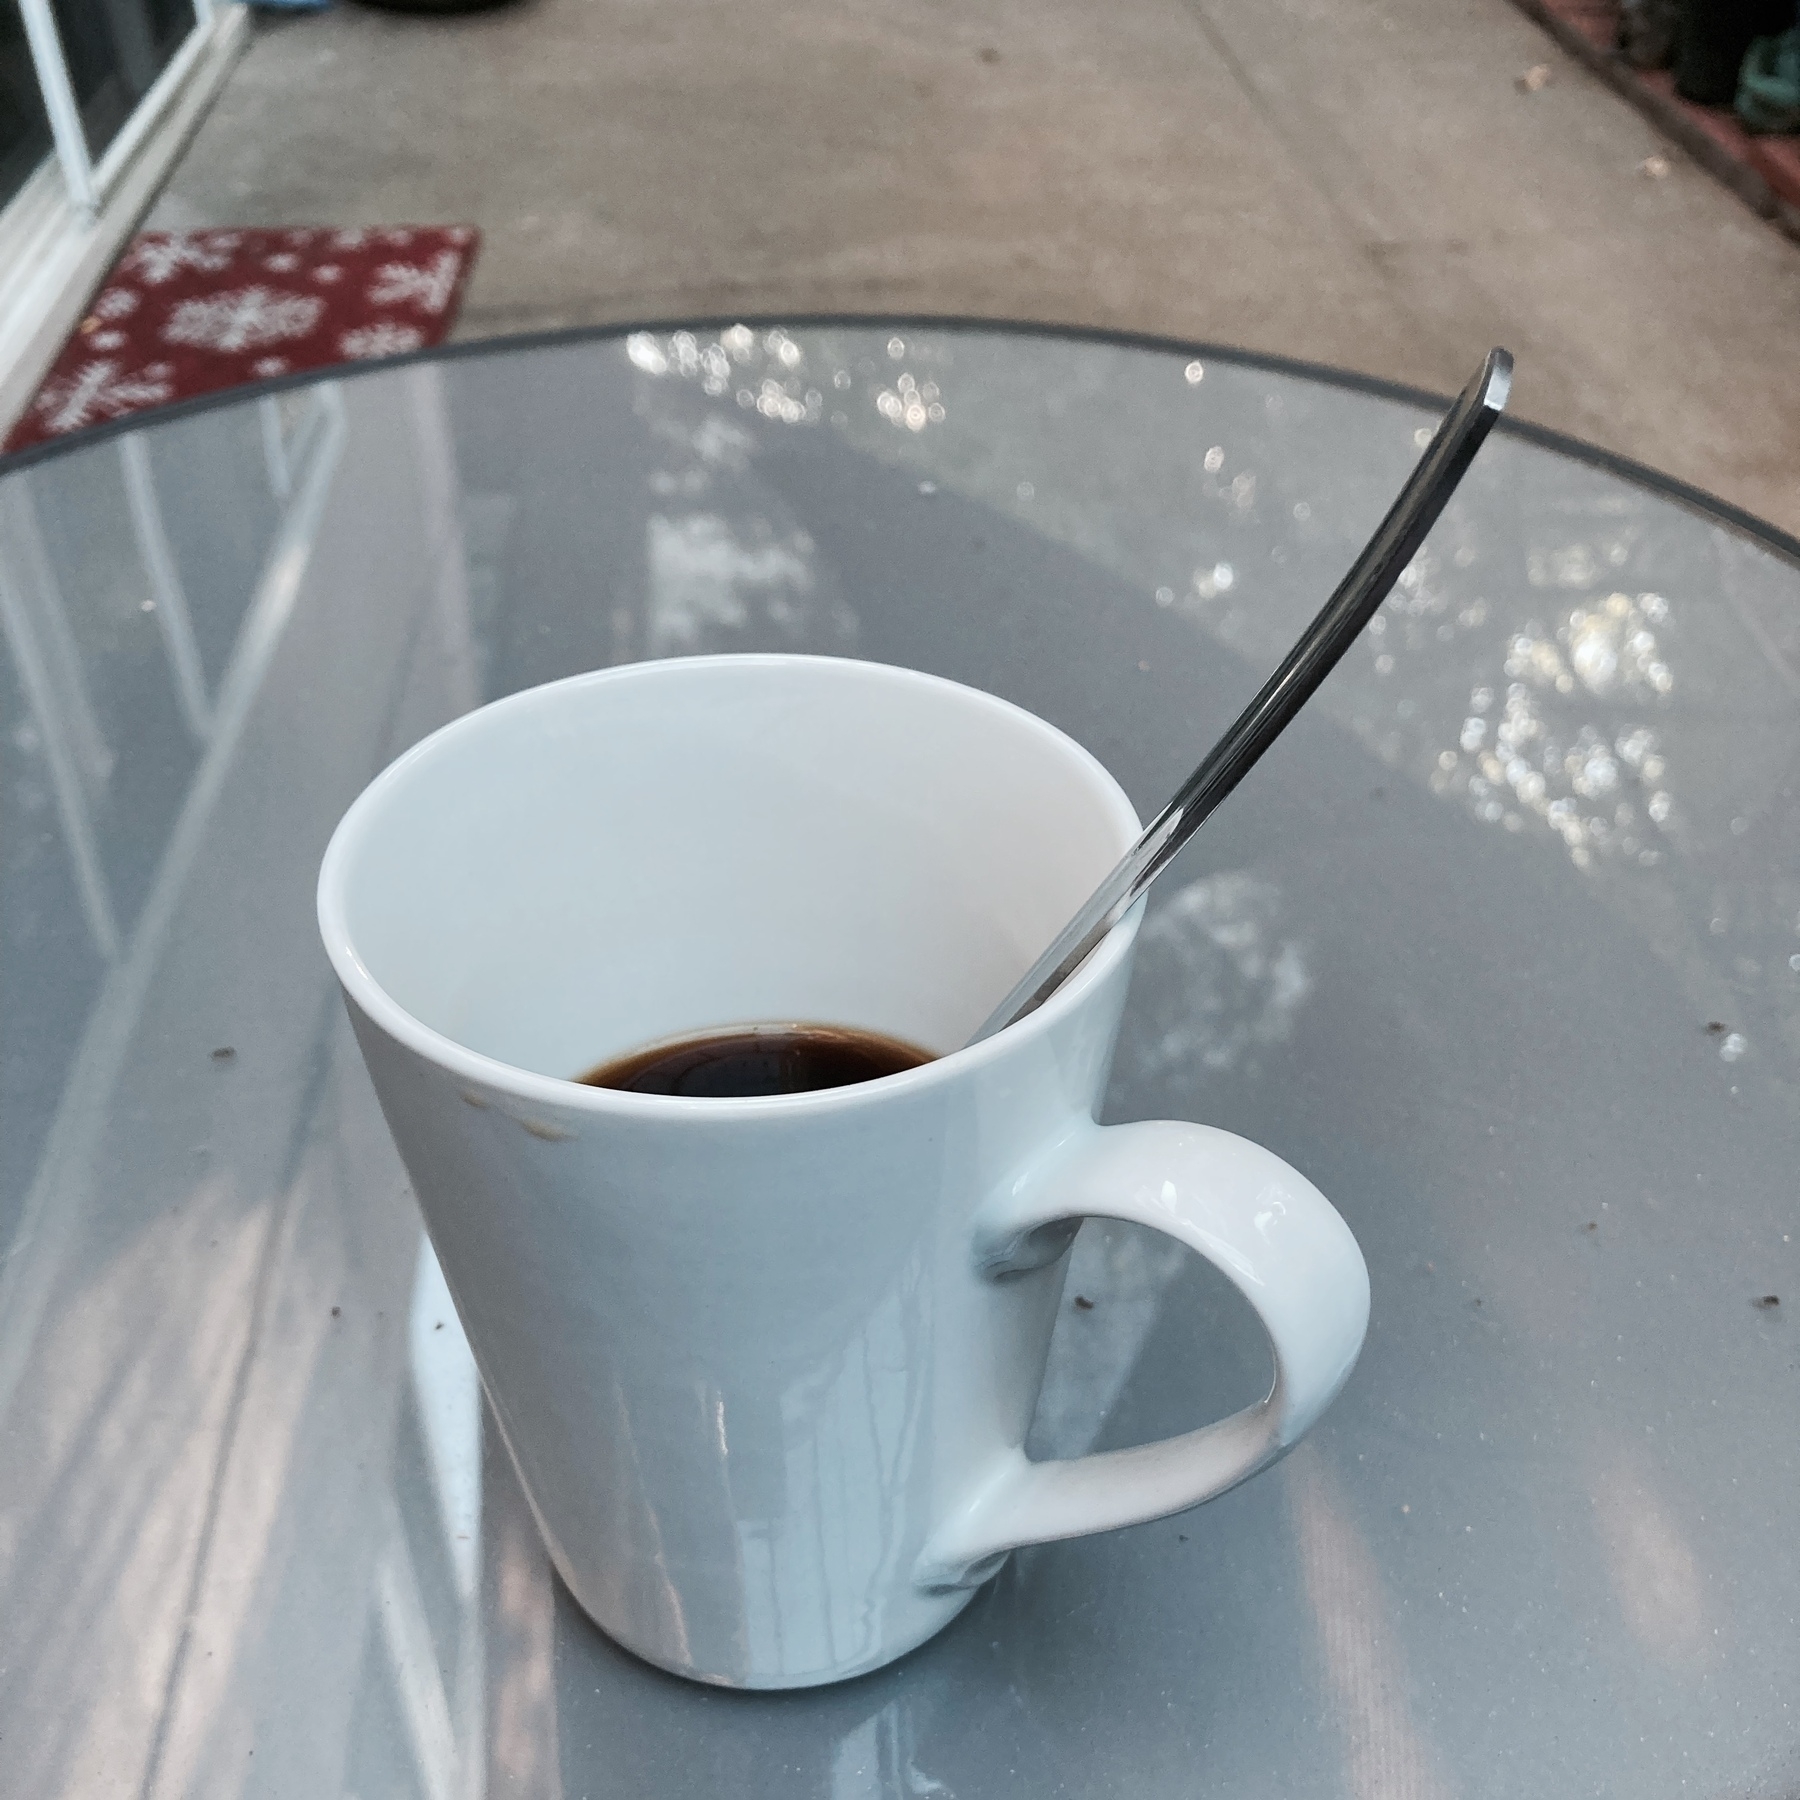 Coffee mug on patio table. 